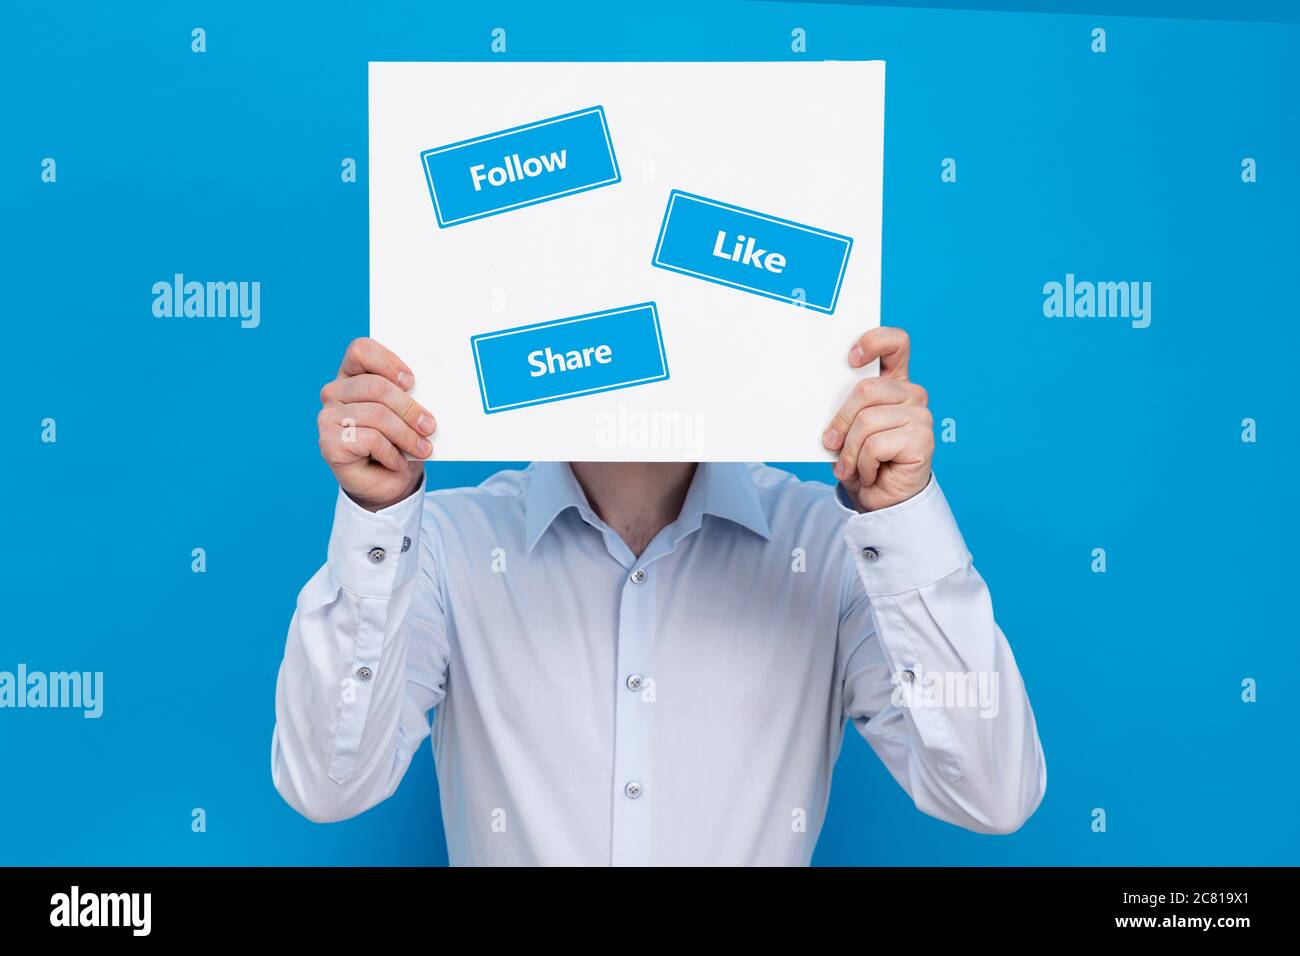 Homme d'affaires couvre son visage avec un tableau blanc avec des panneaux « suivre », « aimer » et « partager ». Conception commerciale du marketing dans les médias sociaux. Banque D'Images